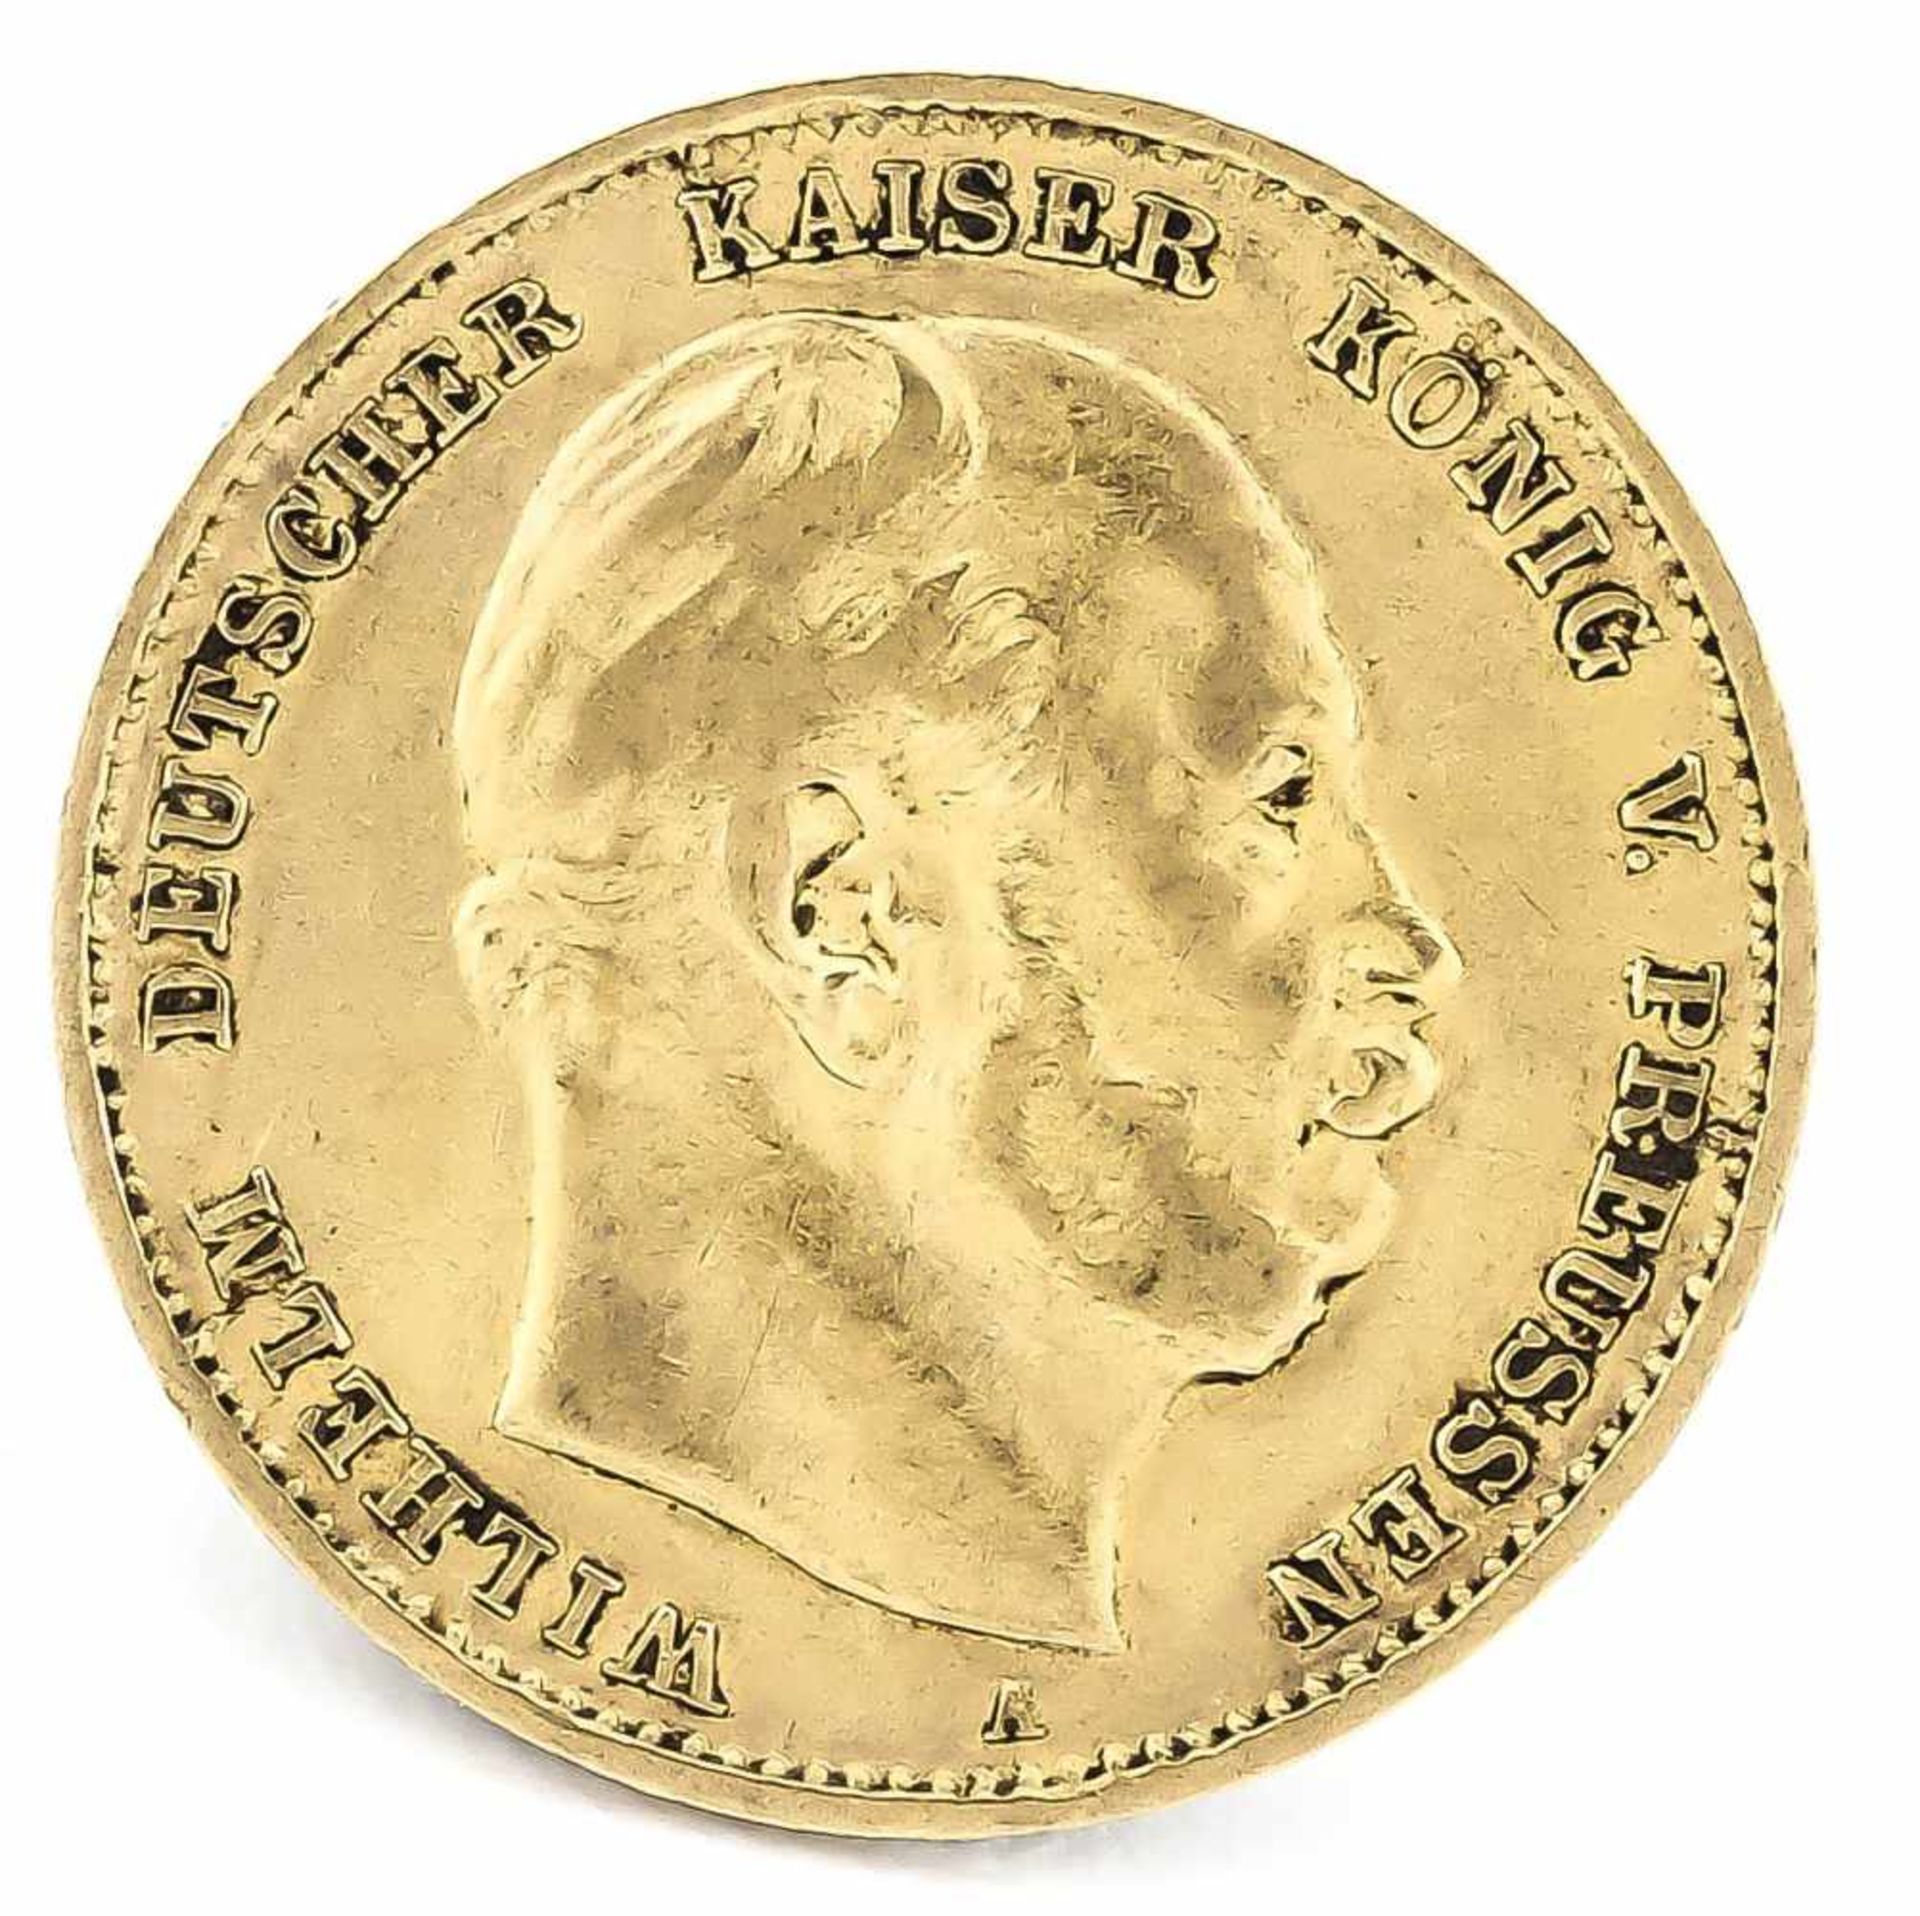 10 Mark, Preußen, Wilhelm Deutscher Kaiser König von Preußen, 1875 A, in ss-vz